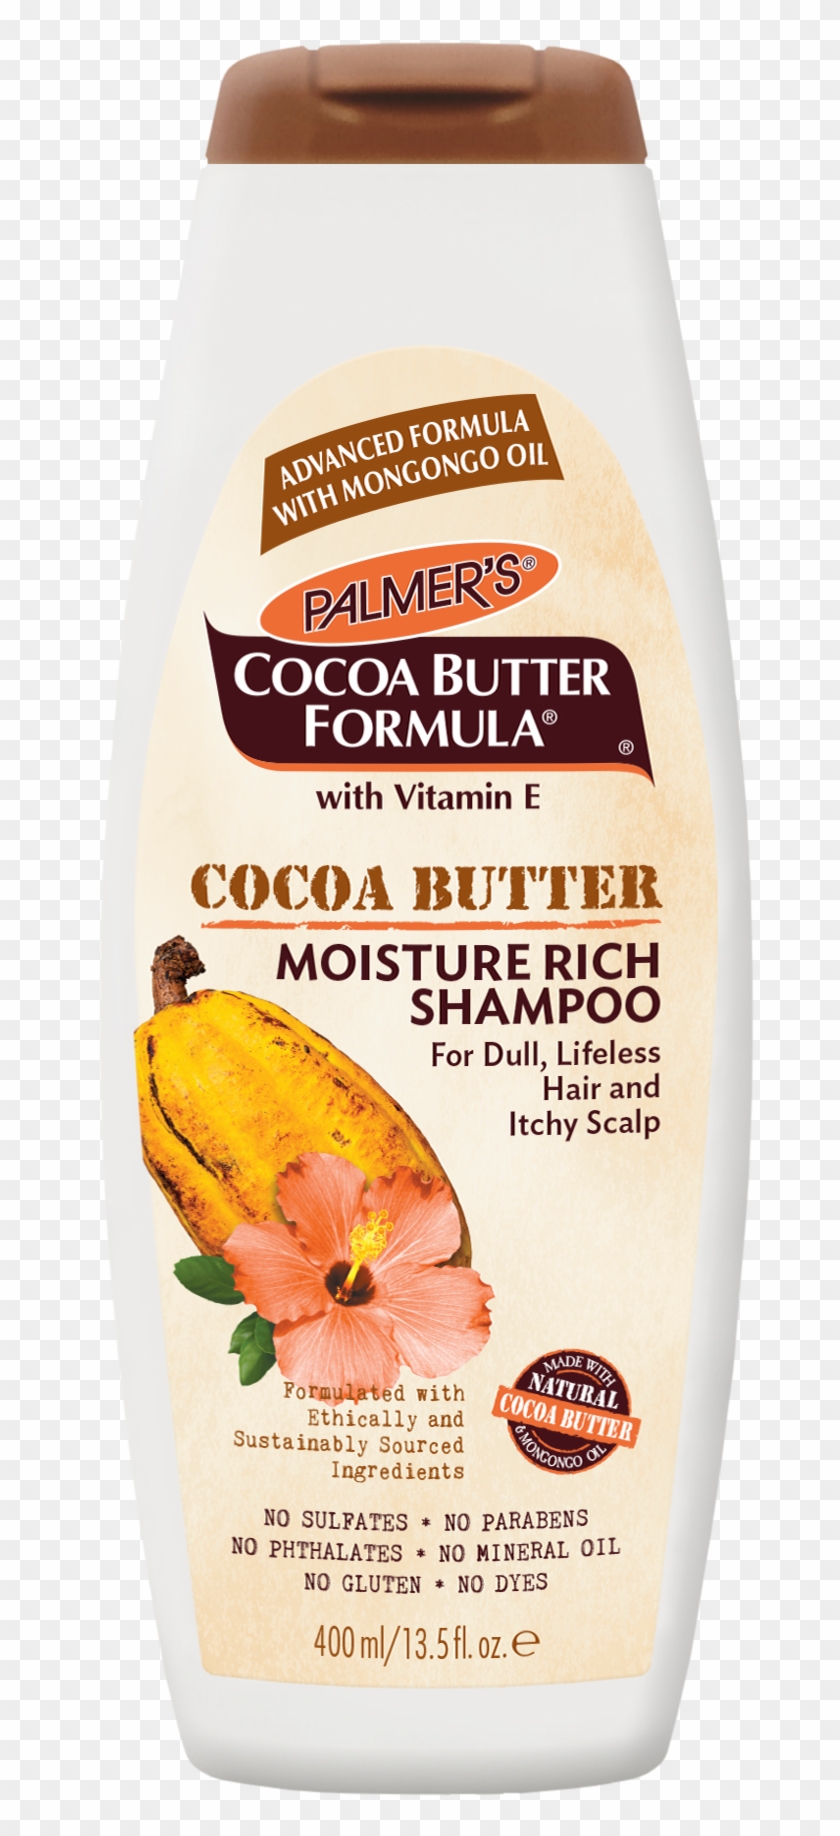 Palmer's Cocoa Butter Formula Moisture Rich Shampoo, - Palmers Cocoa Butter Clipart #3945189